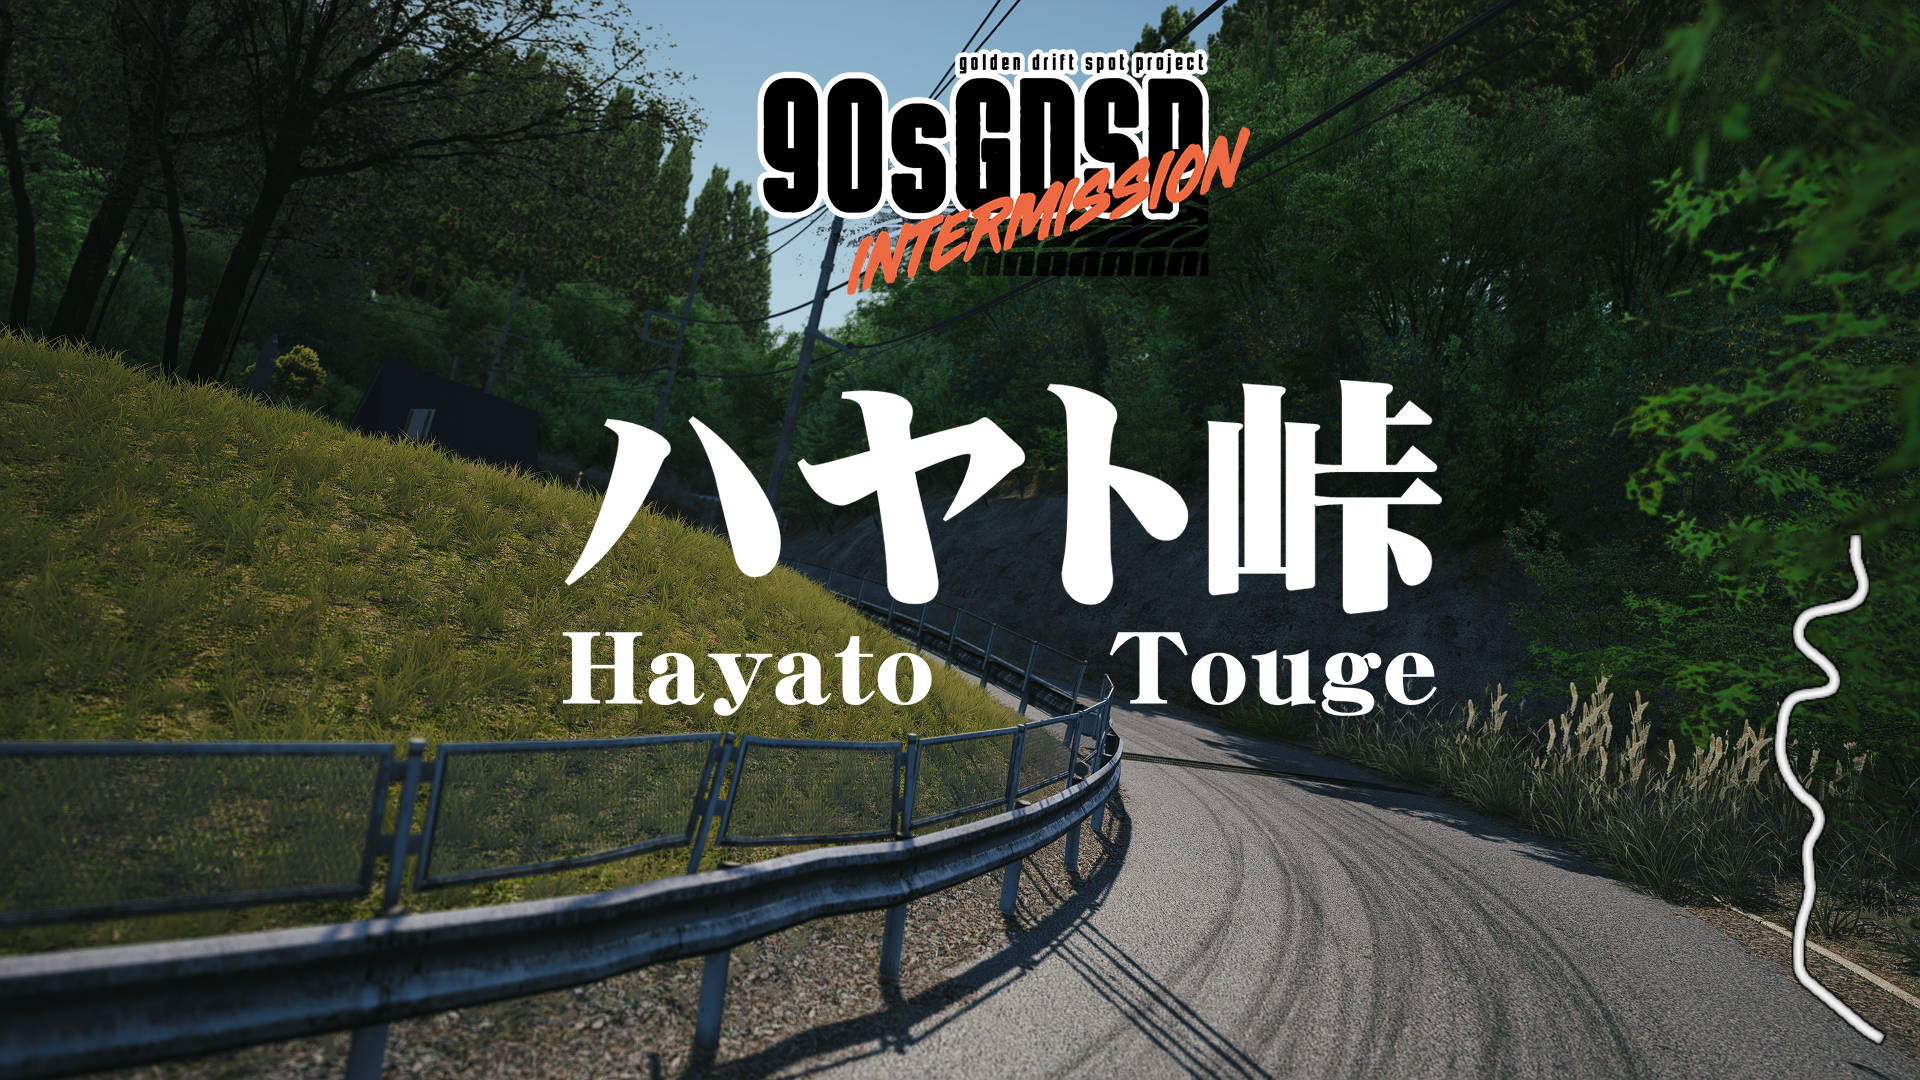 Hayato Touge